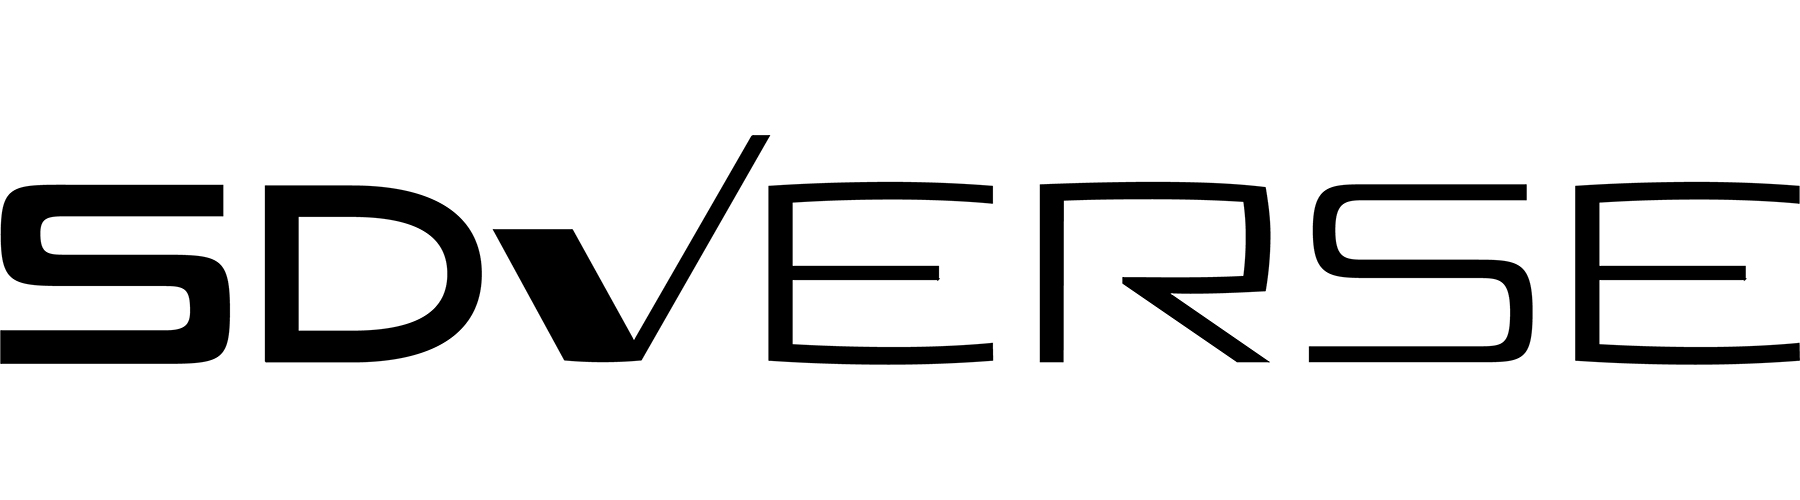 SDVerse logo in black